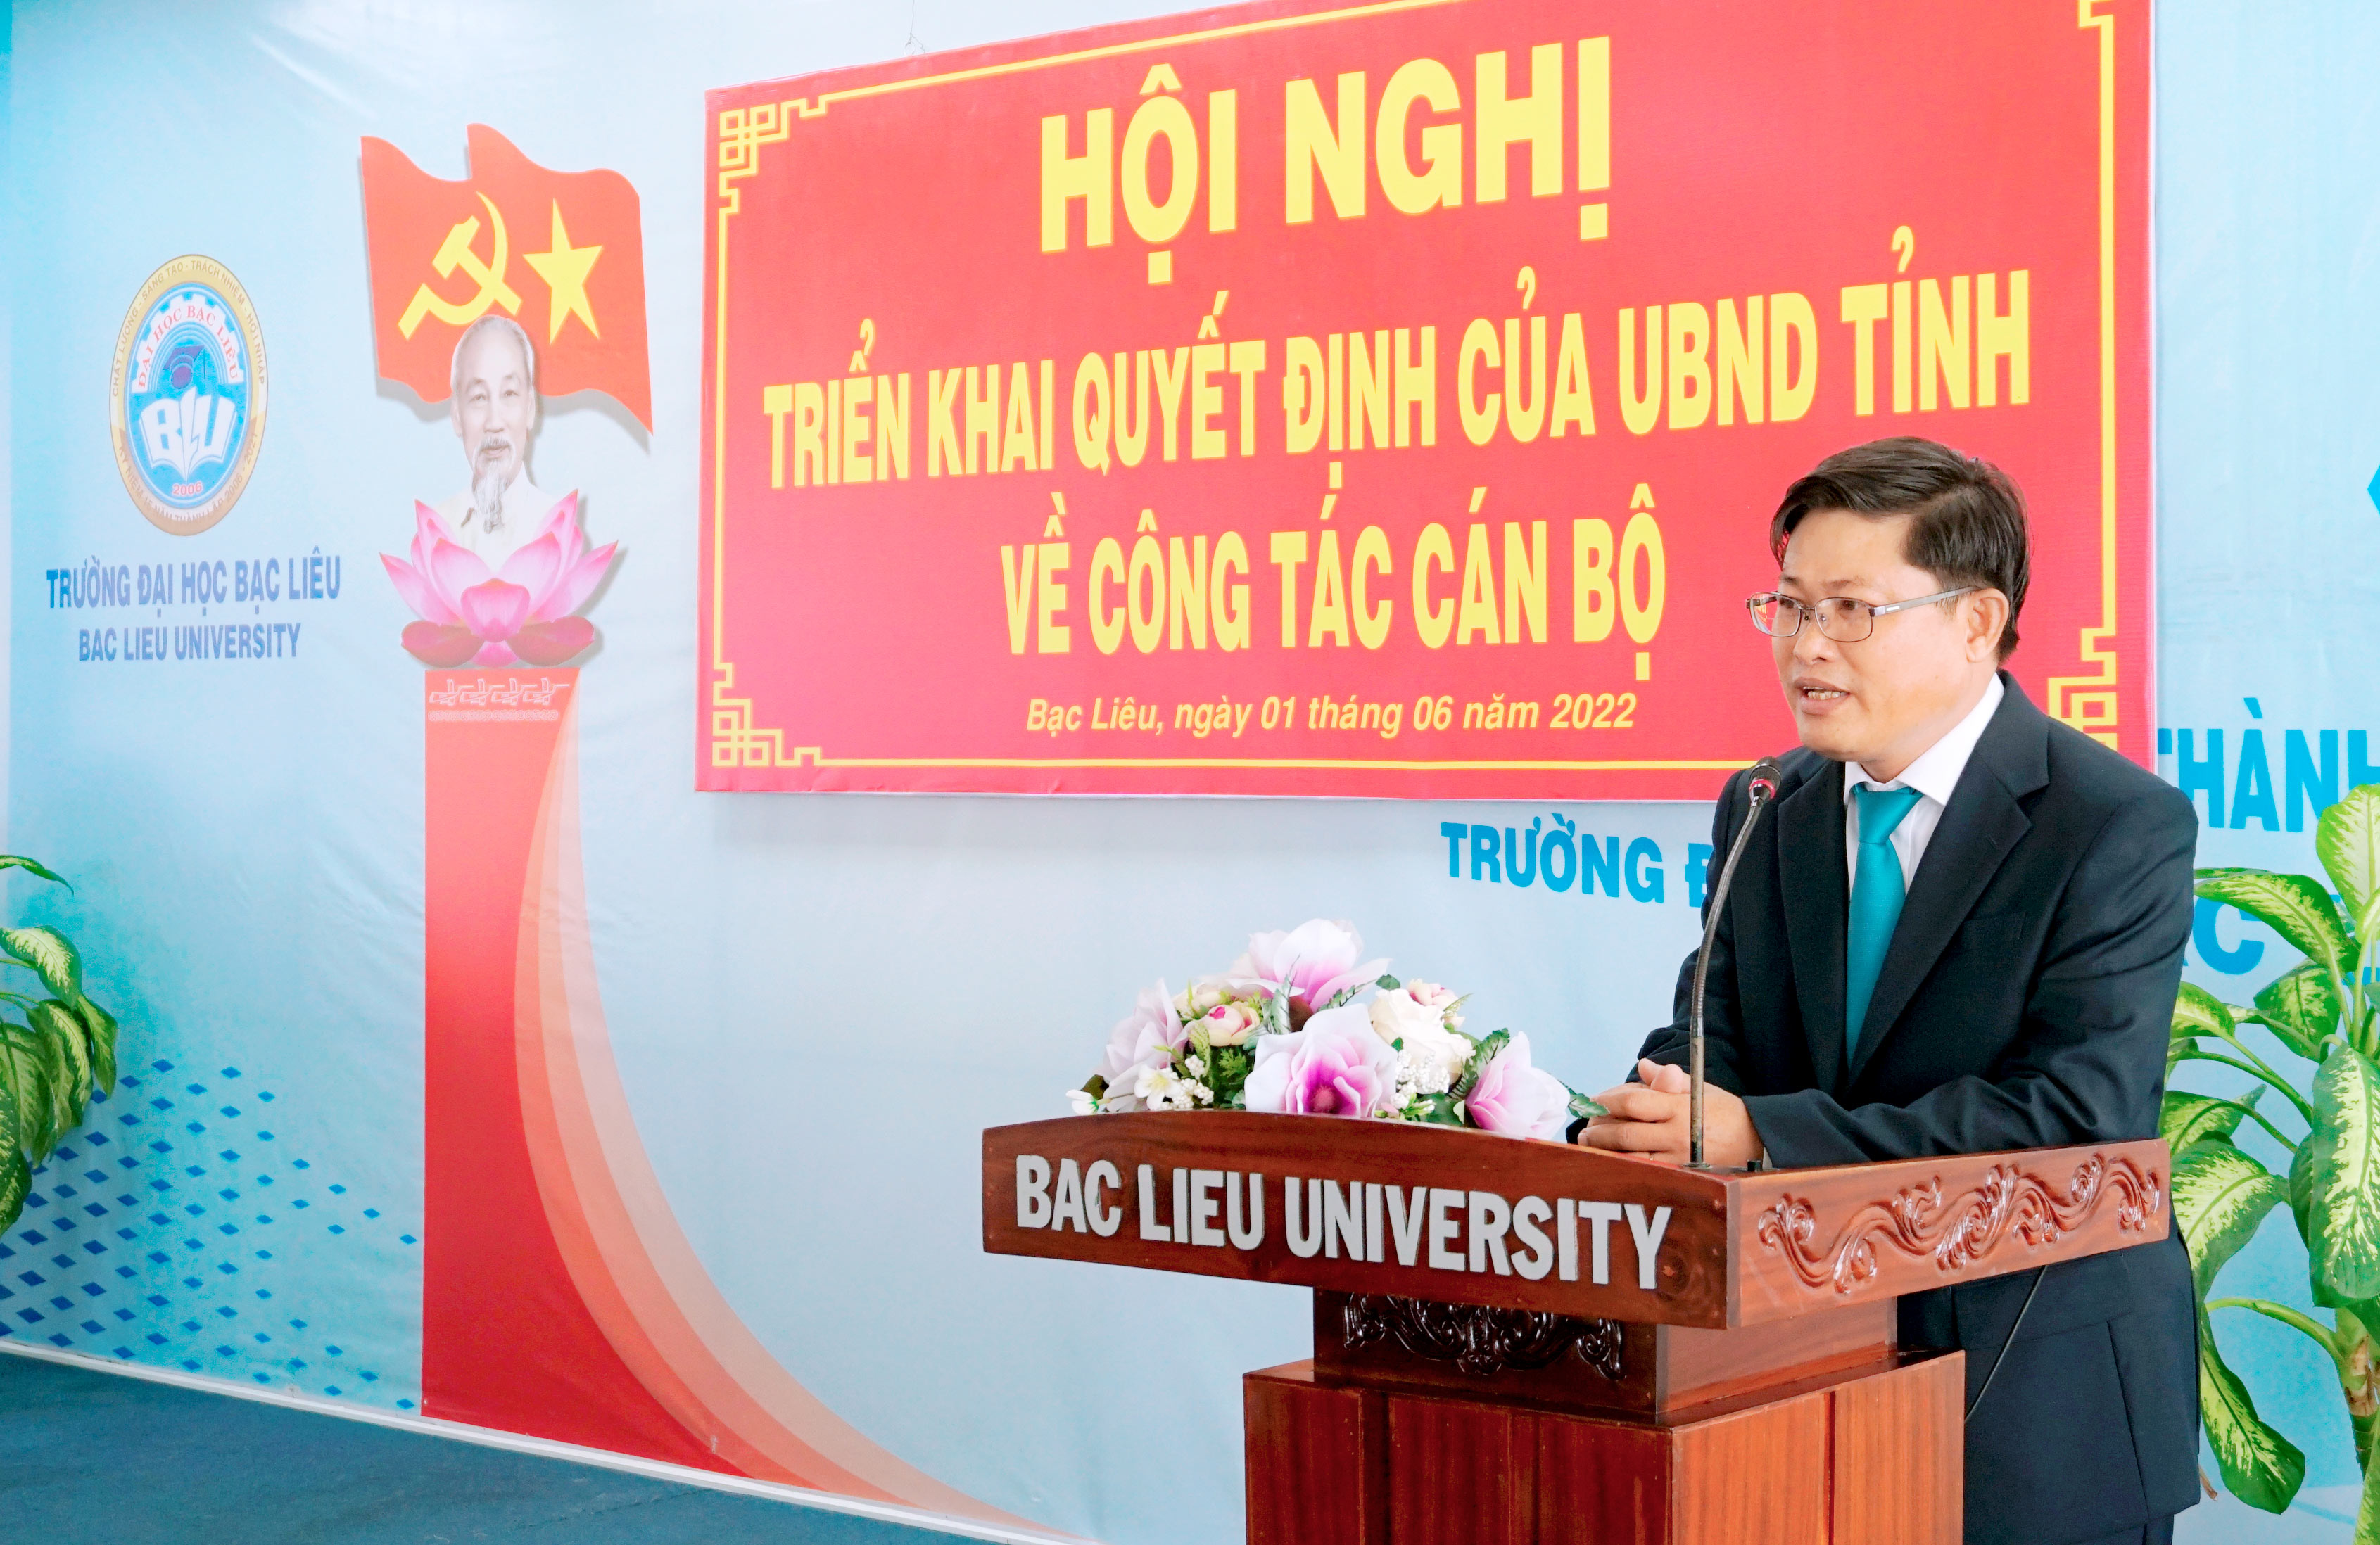 Trường Đại học Bạc Liêu tổ chức hội nghị triển khai quyết định của UBND tỉnh về việc bổ nhiệm Hiệu trưởng và Phó Hiệu trưởng